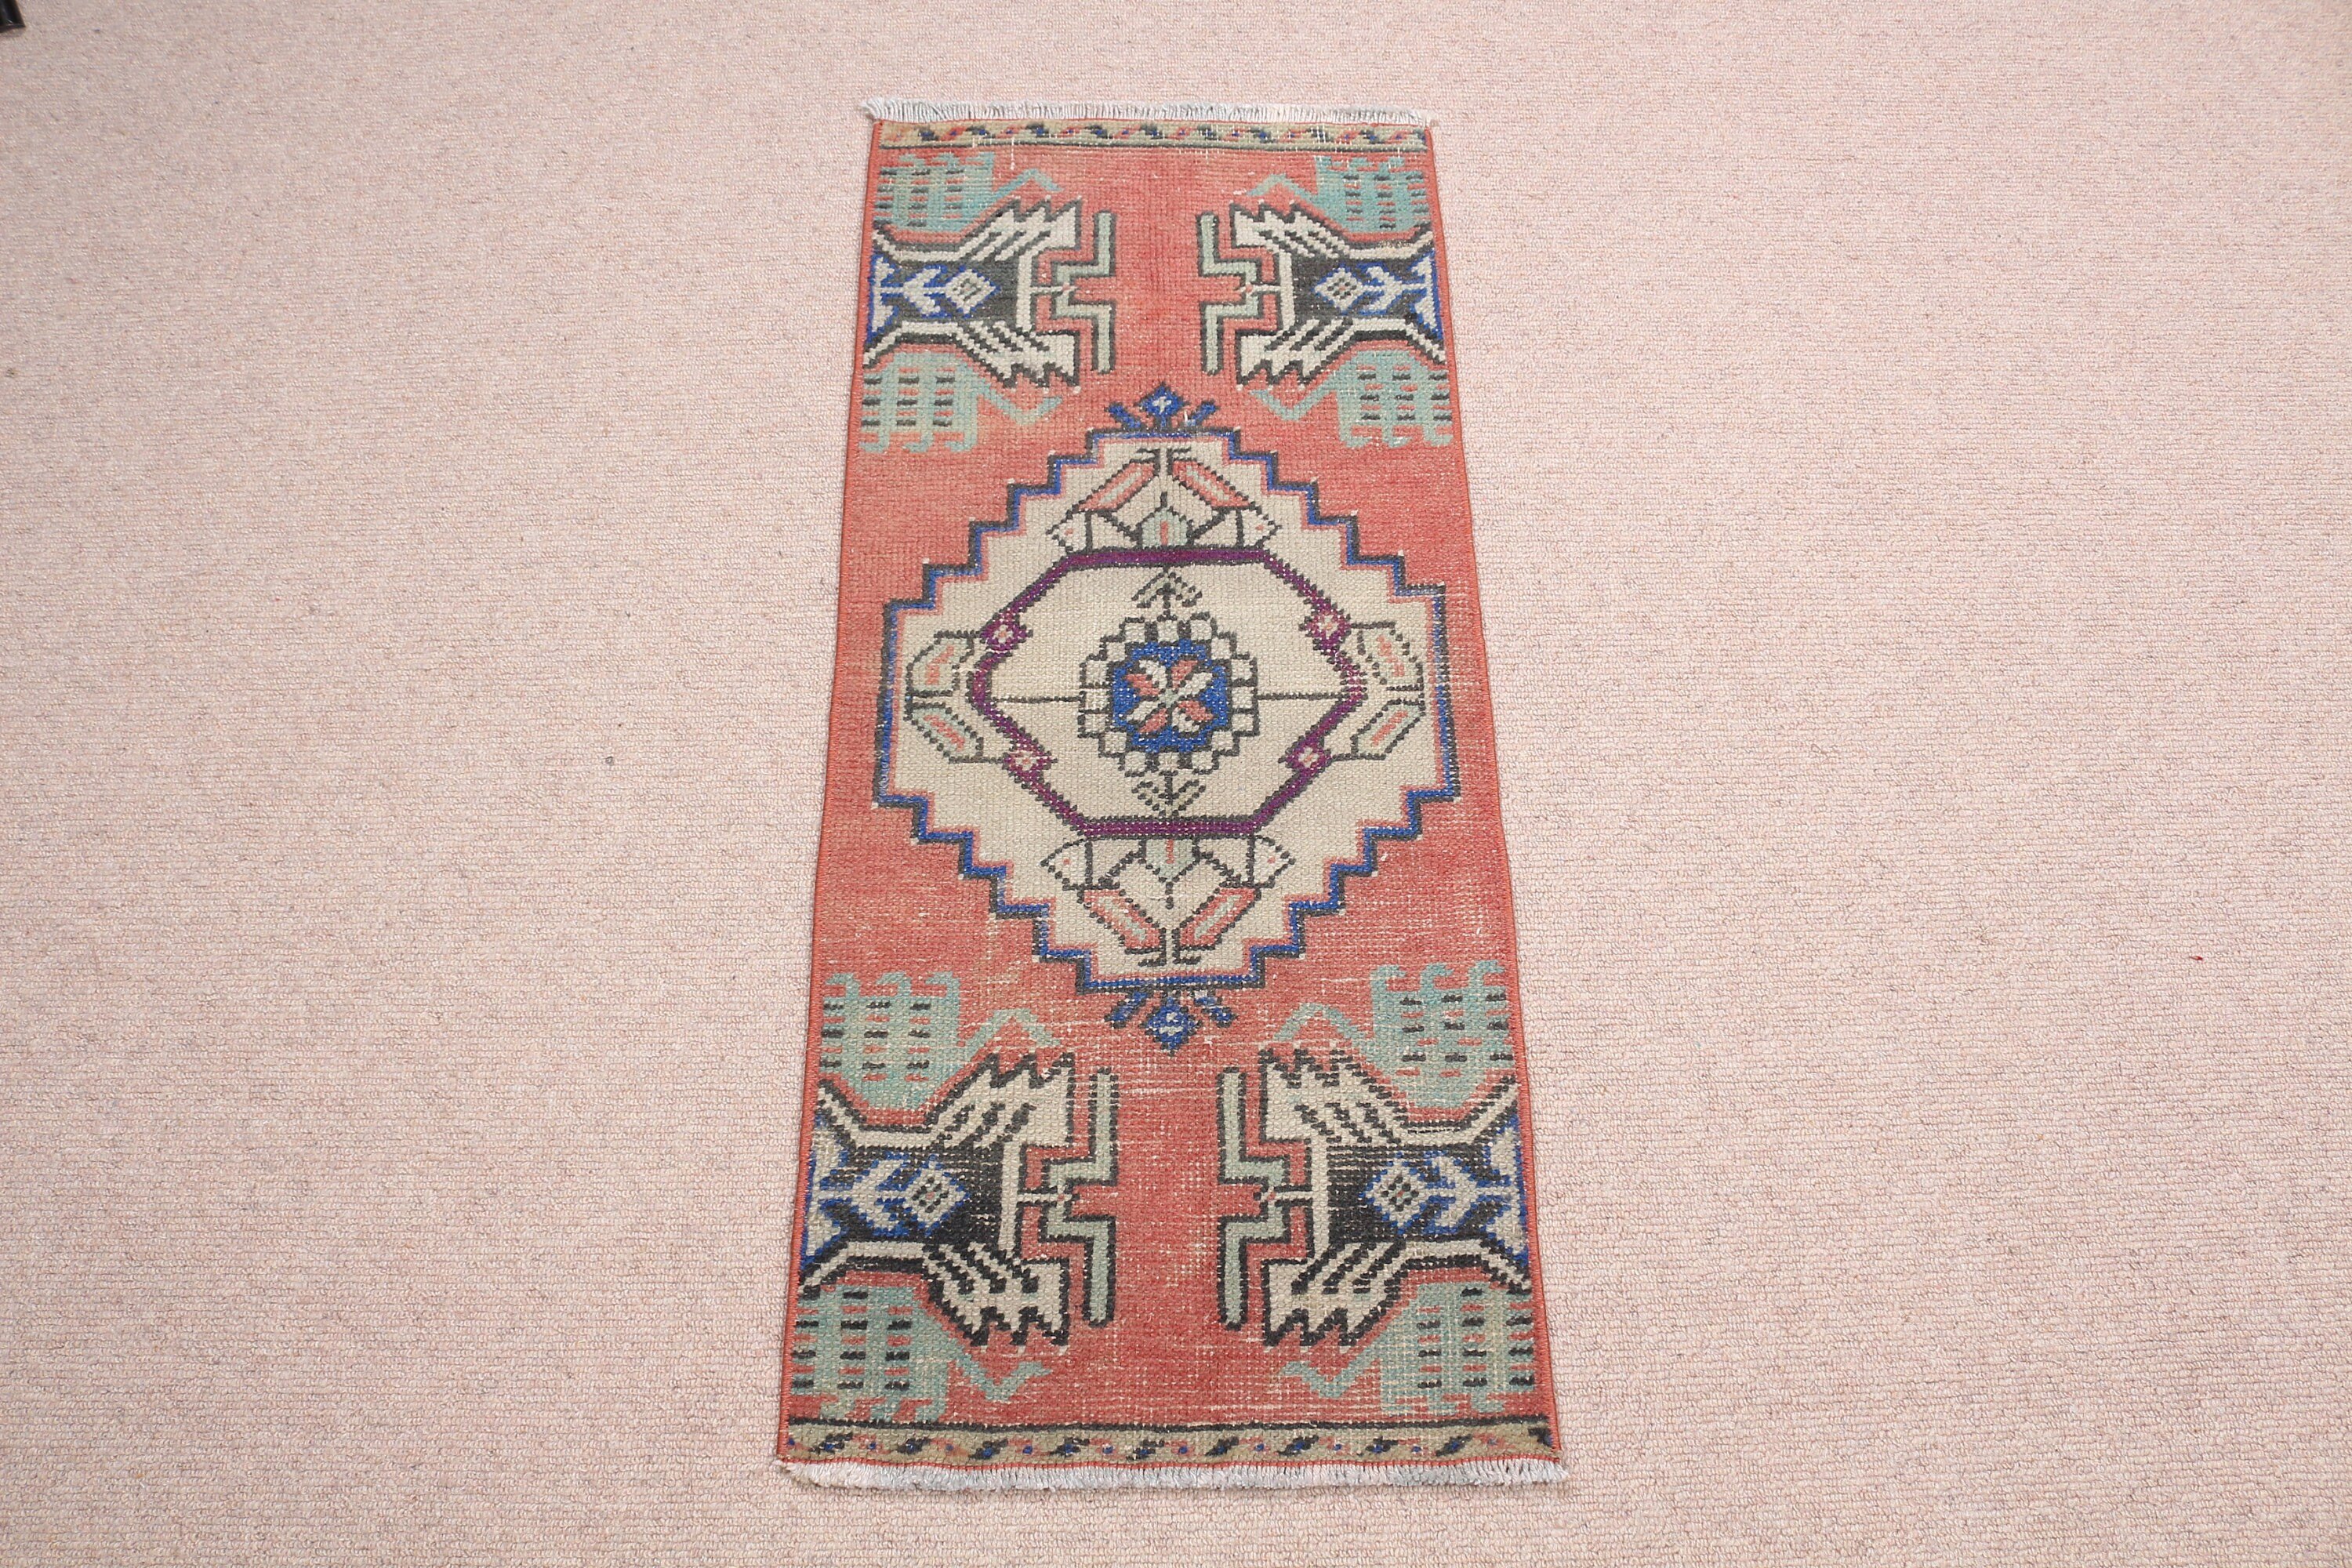 Moroccan Rugs, Bedroom Rug, Vintage Rug, Red Moroccan Rug, 1.3x3 ft Small Rugs, Oriental Rugs, Rugs for Entry, Turkish Rugs, Nursery Rug